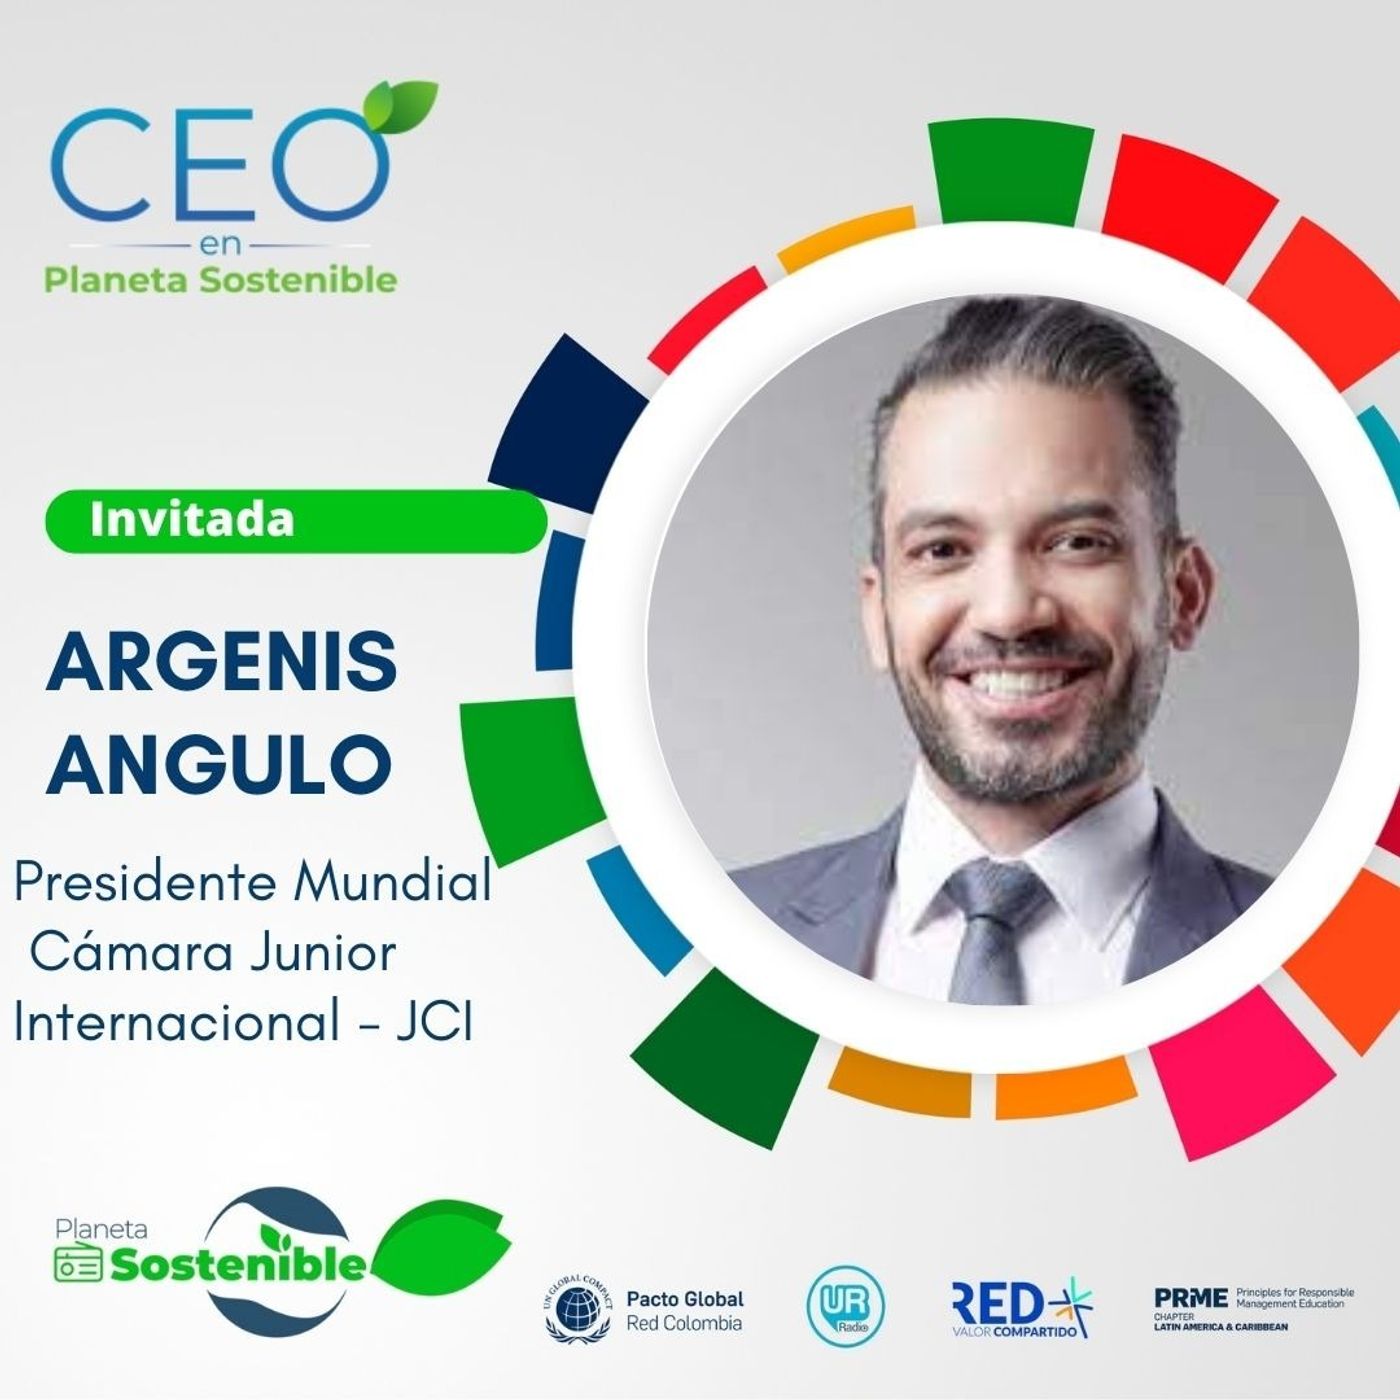 Temporada CEO con Argenis Angulo, Presidente Mundial Cámara Junior Internacional